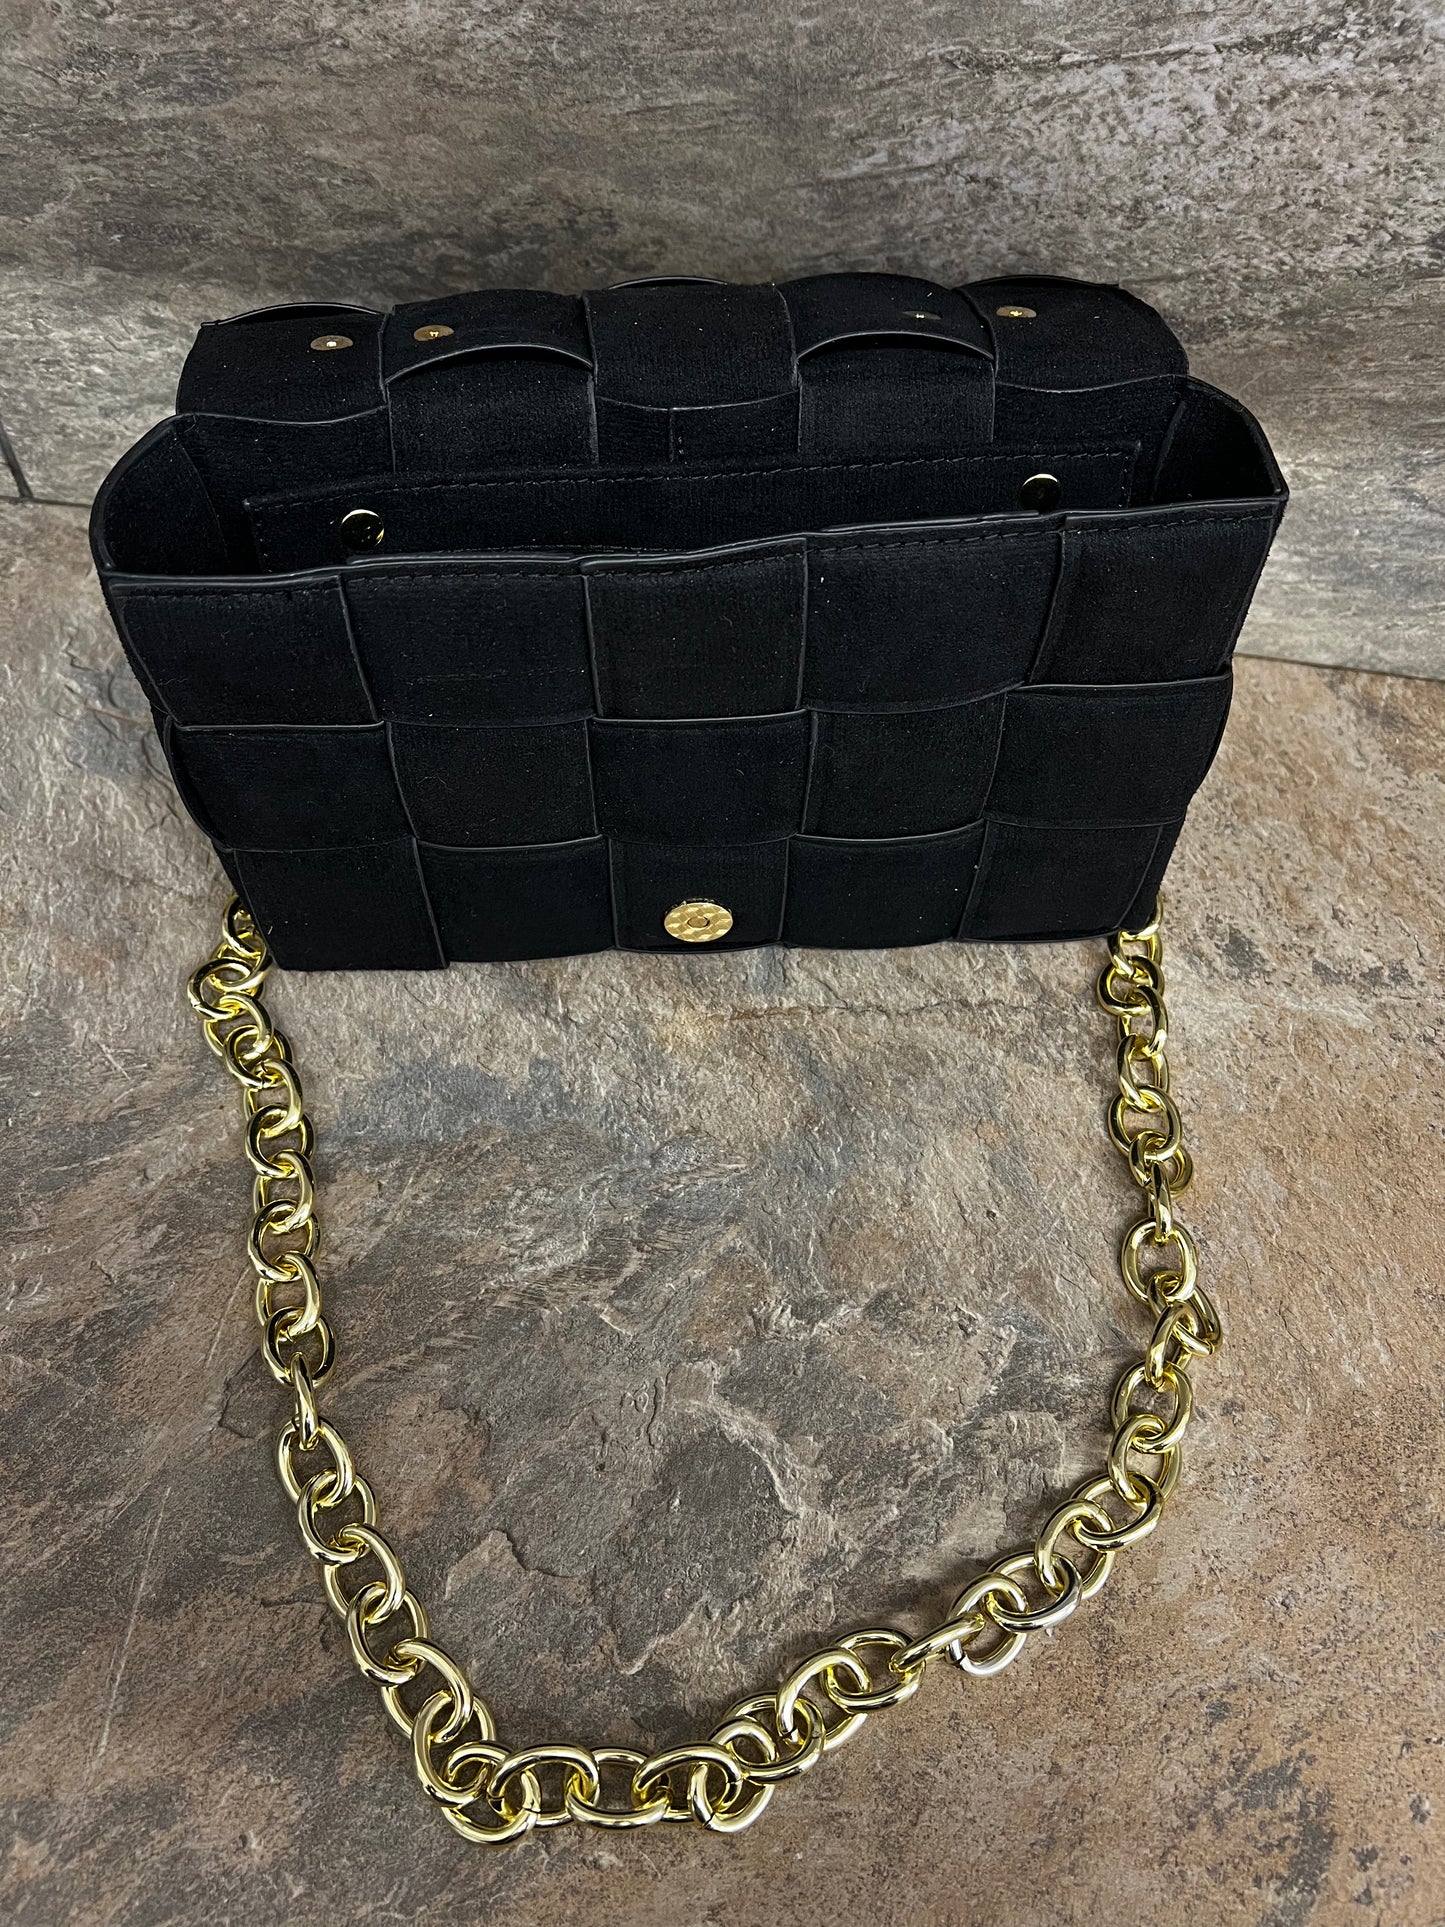 Black faux suede woven bag